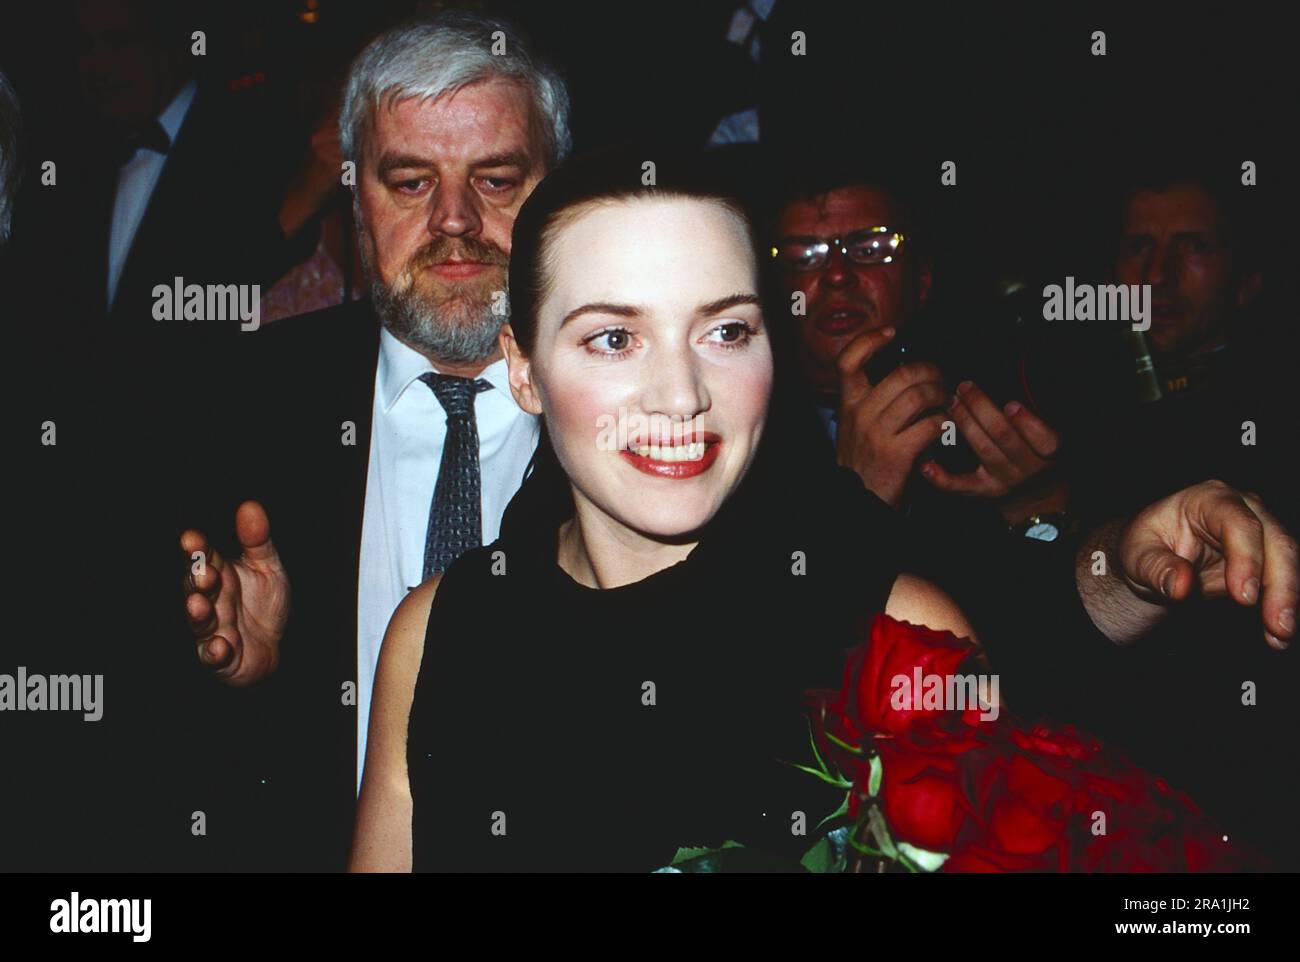 Goldene Kamera, Preisverleihung à Berlin, 2001, Kate Winslet, britische Schauspielerin, Erhielt die Goldene Kamera für ihre Rolle im film: Titanic, hier umringt von Fotografen BEI der Preisverleihung. Banque D'Images